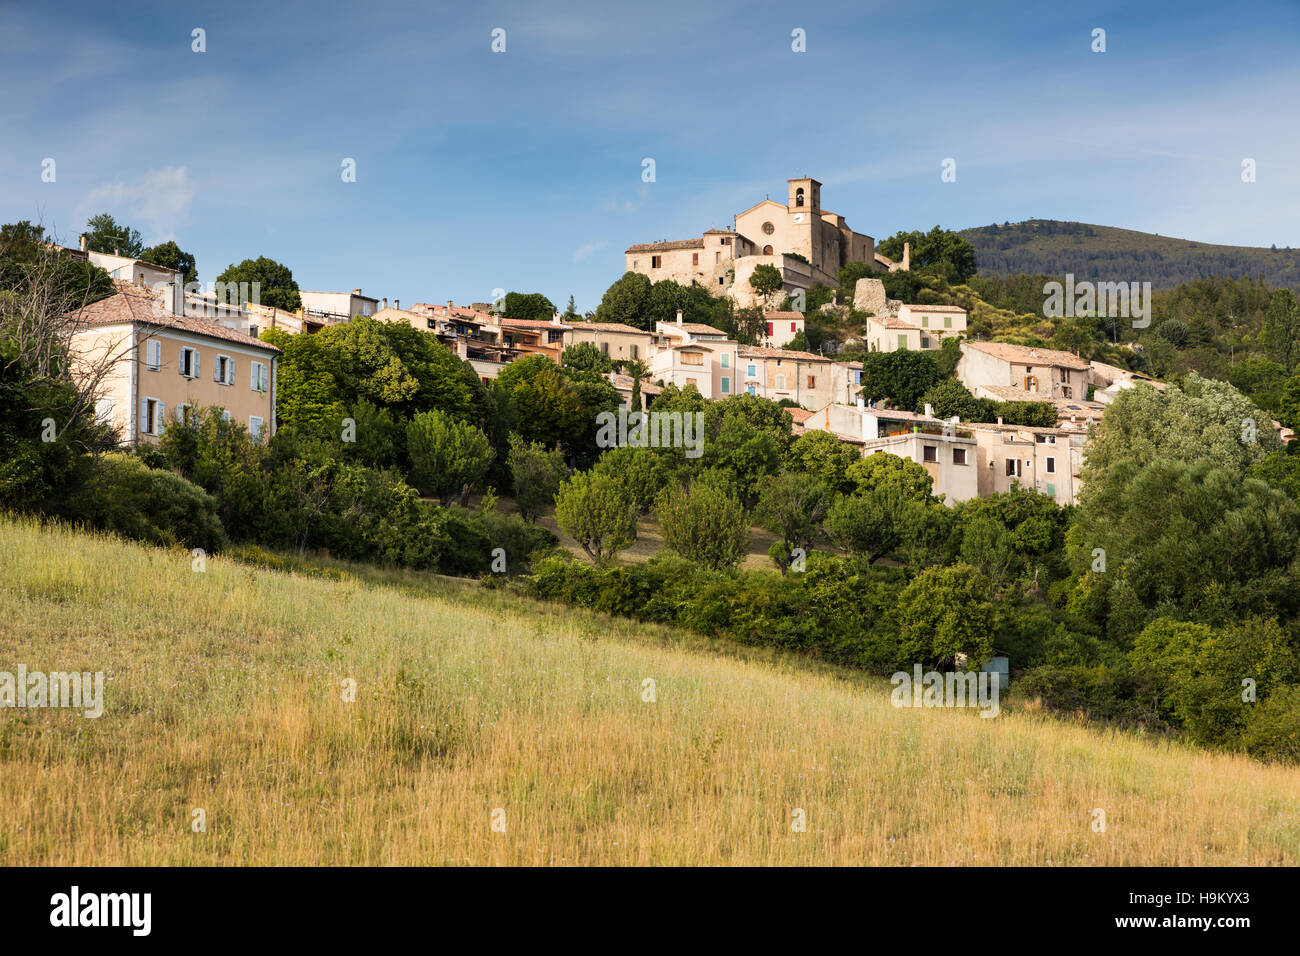 Saint Jurs, commune, Alpes-de-Haute-Provence, Provence-Alpes-Côte d'Azur, France Stock Photo